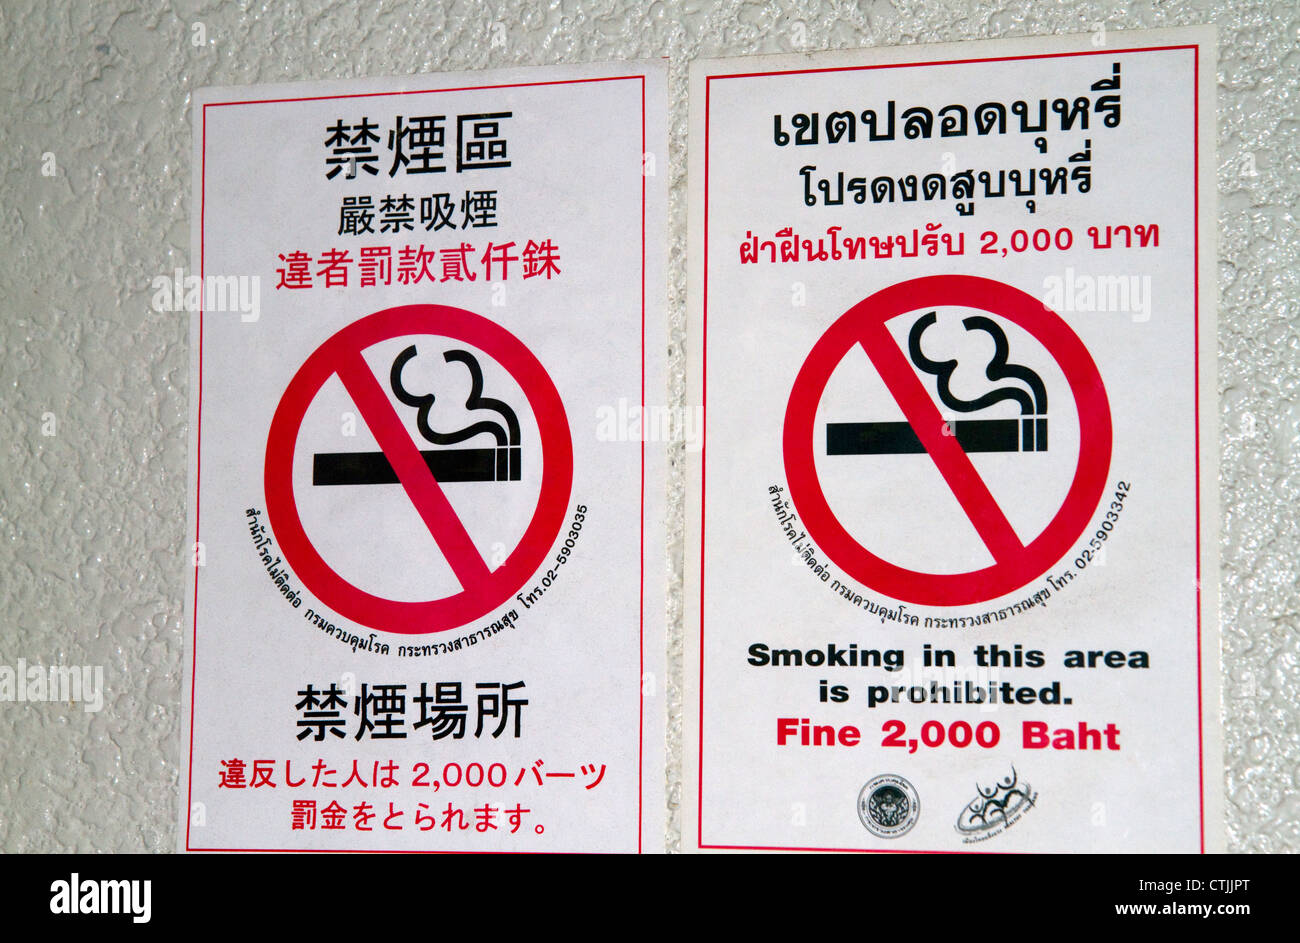 В тайланде можно курить сигареты. Курение в Тайланде. Тайланд запрет курения. Место для курения в Тайланде.